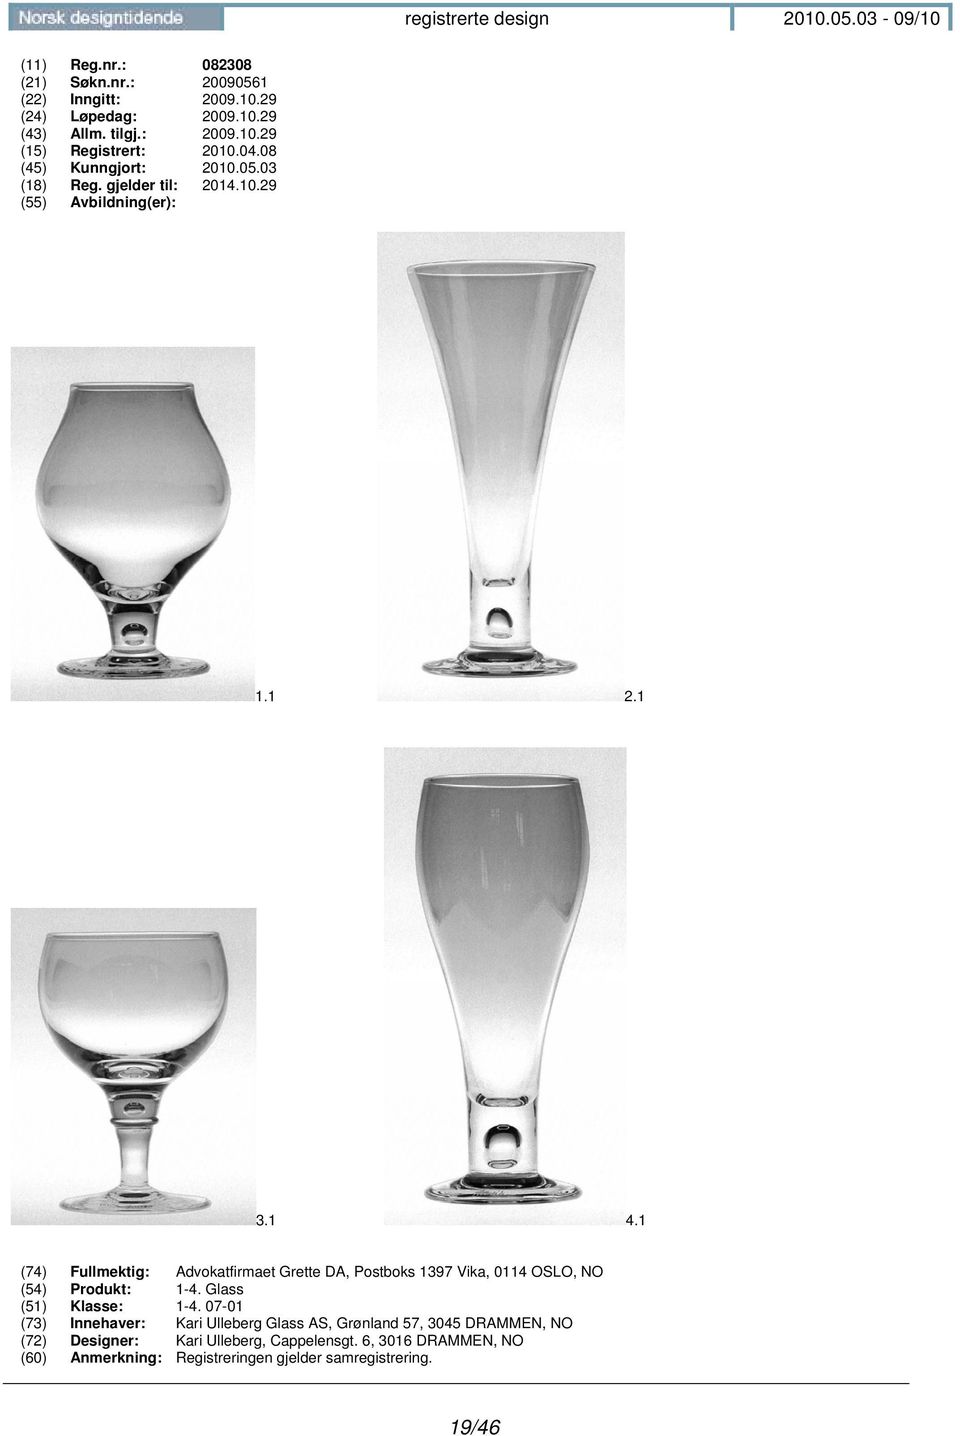 1 (74) Fullmektig: Advokatfirmaet Grette DA, Postboks 1397 Vika, 0114 OSLO, NO (54) Produkt: 1-4. Glass (51) Klasse: 1-4.